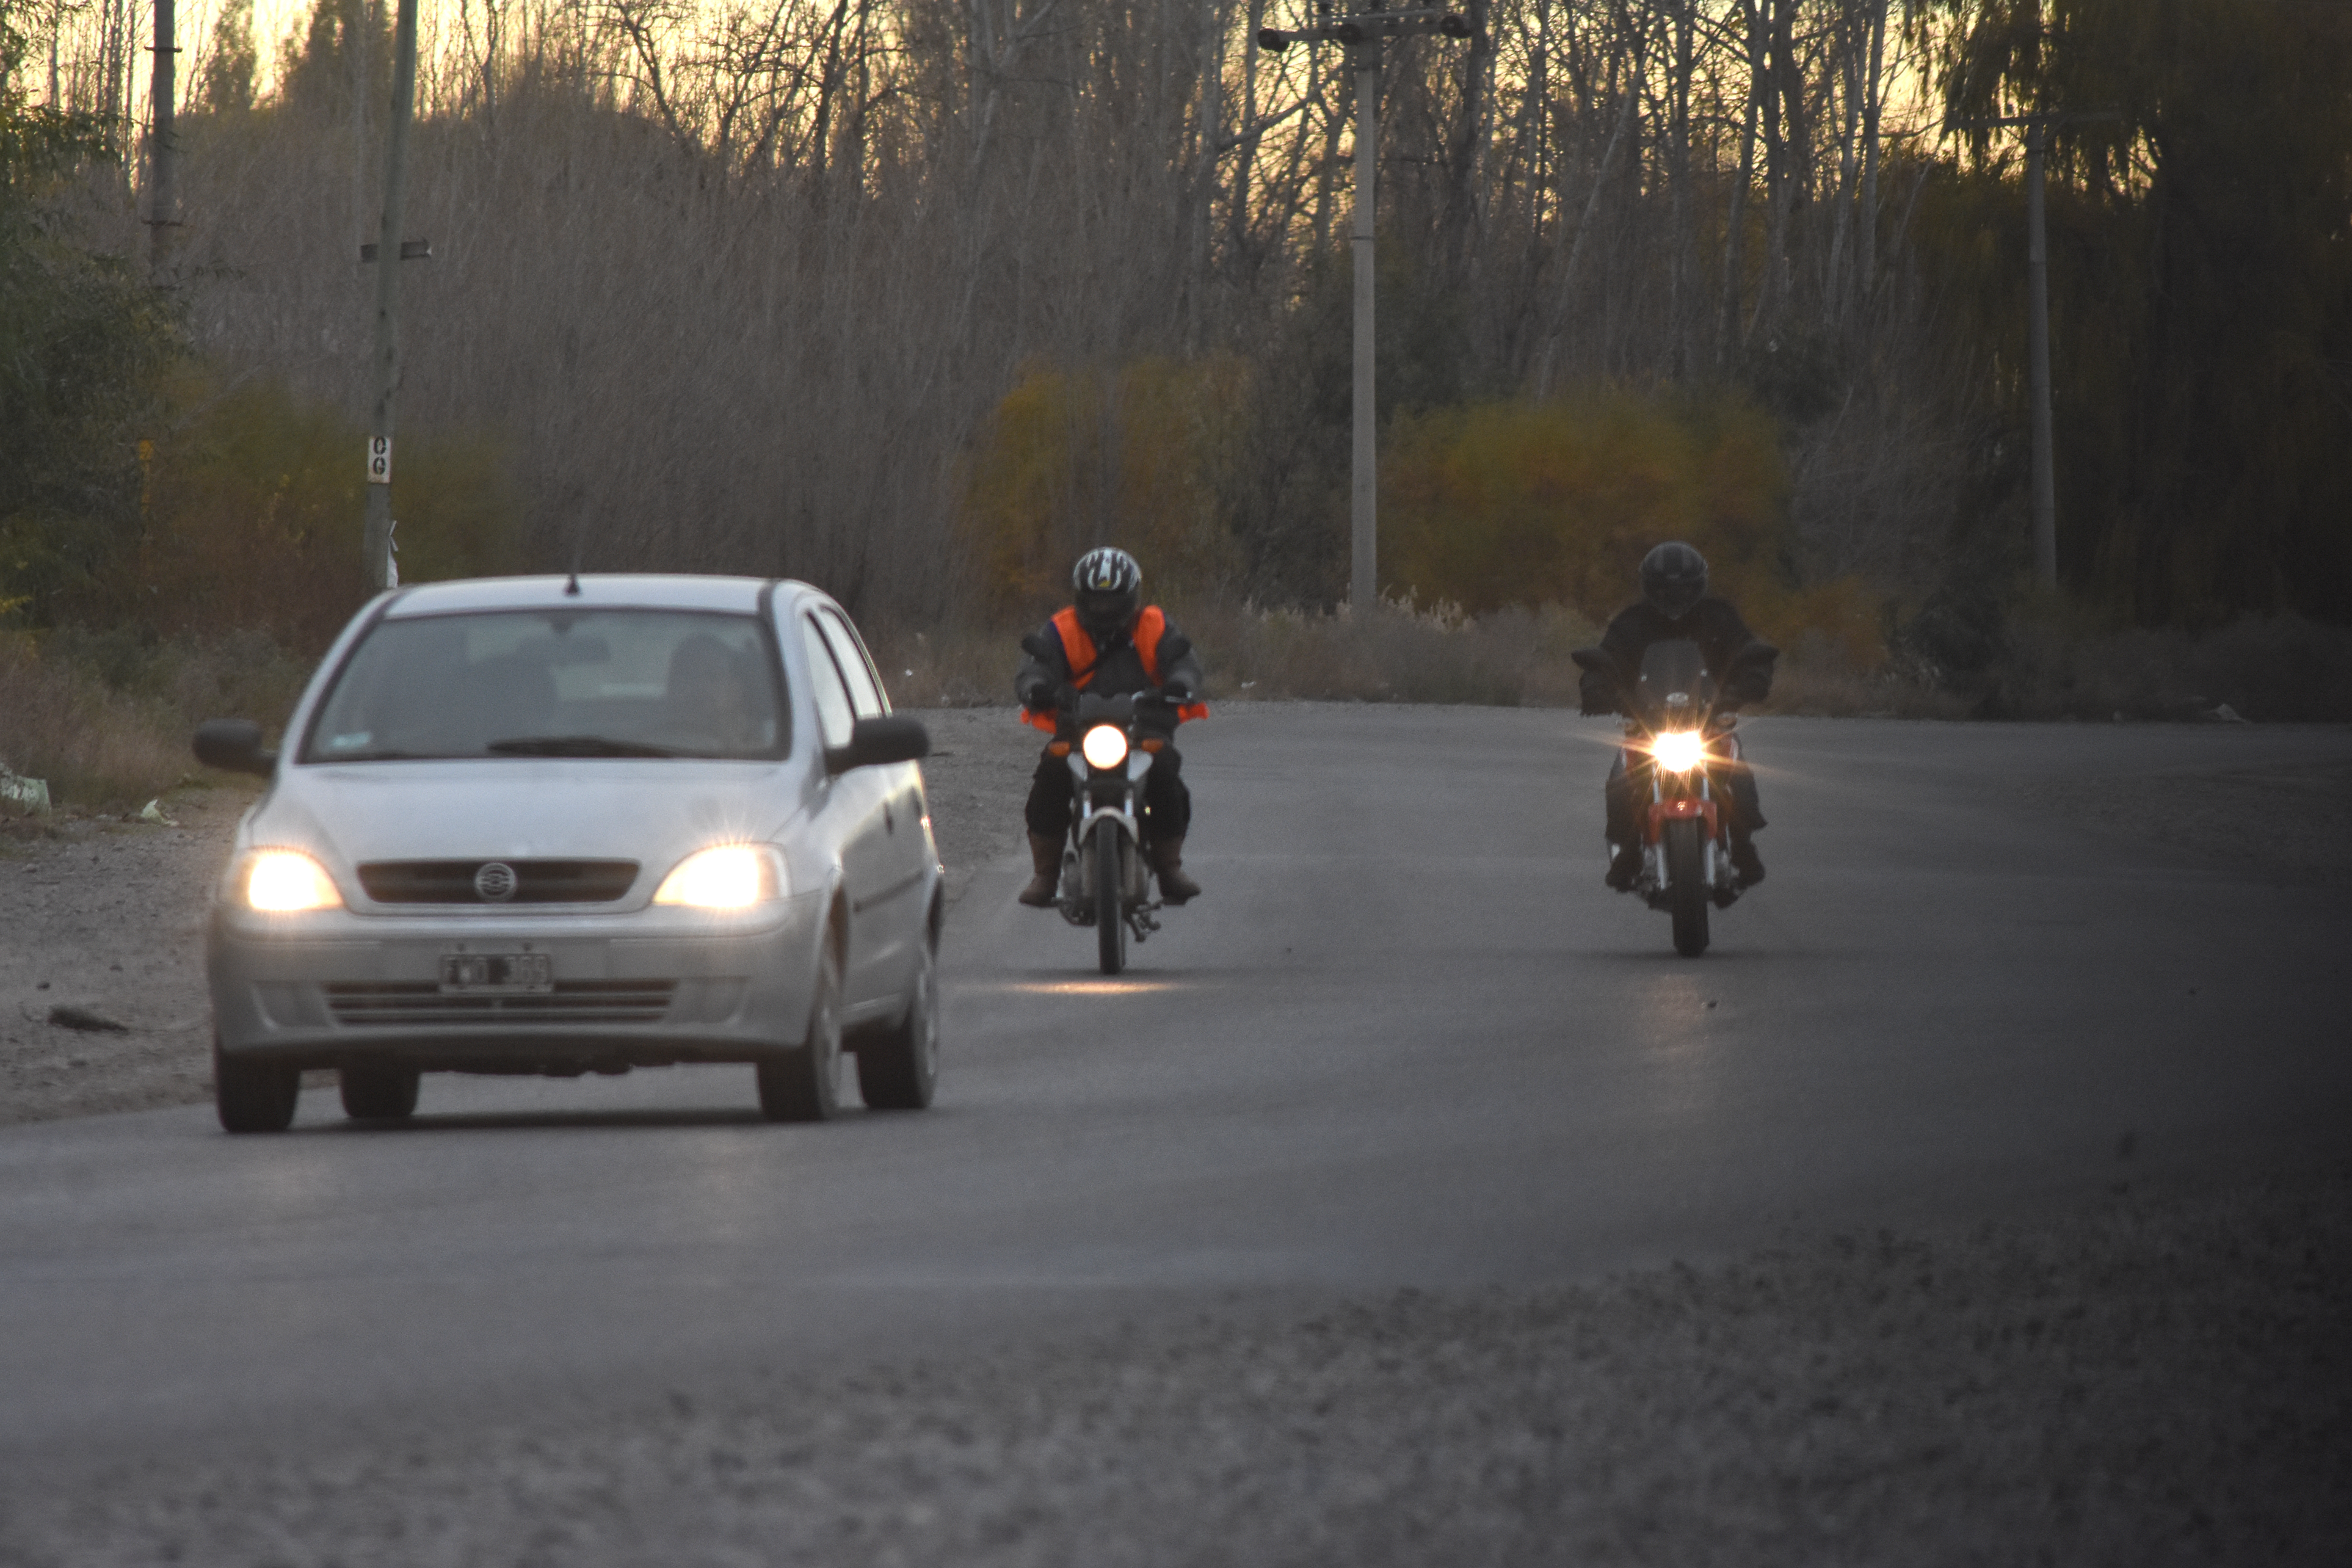 Hubo 16 siniestros viales protagonizados por motos en Roca. 1 tuvo victimas fatales. Foto: Archivo